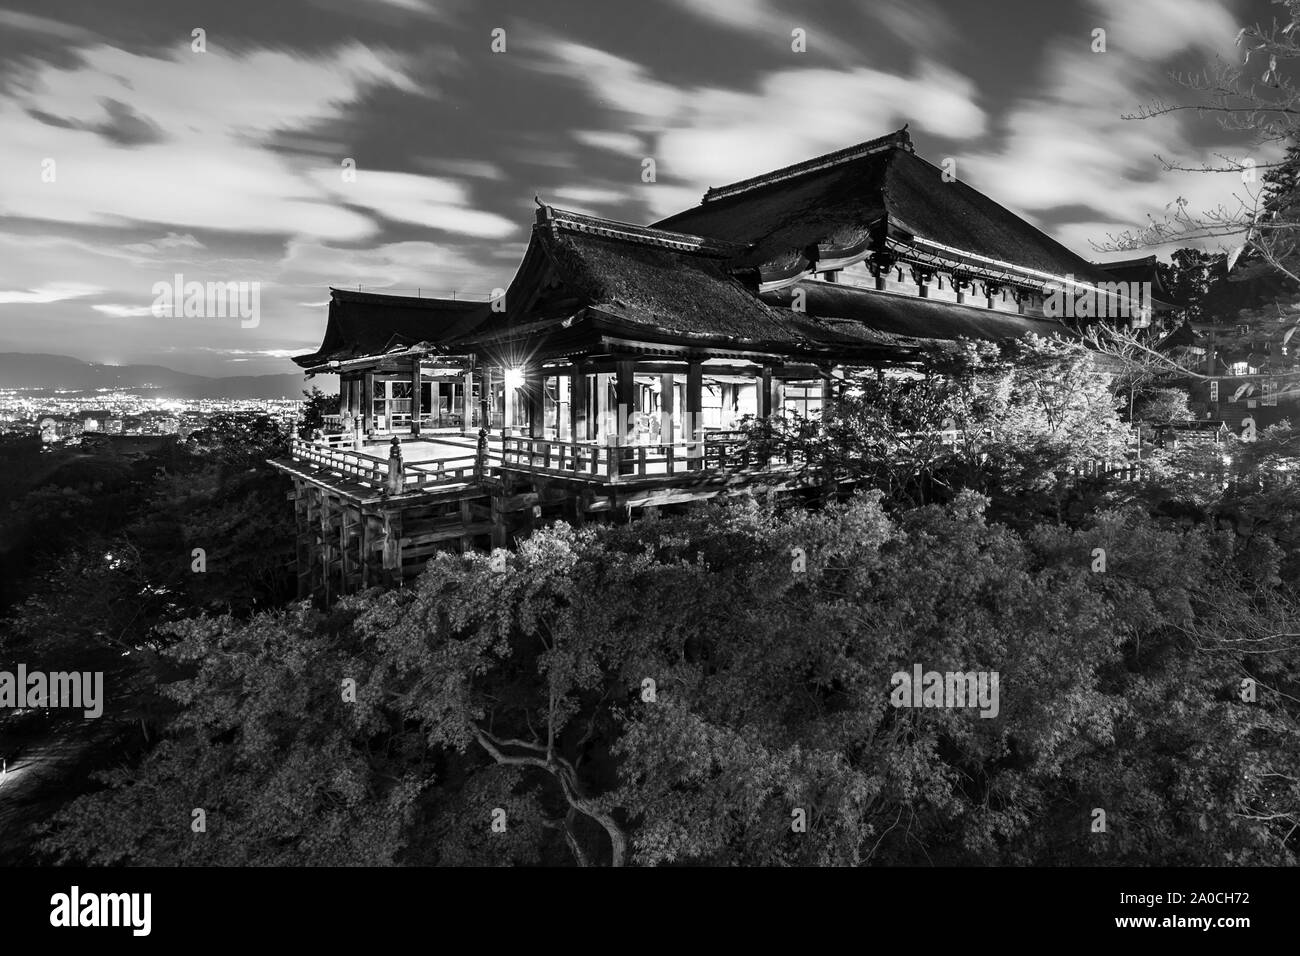 Photo noir et blanc de nuit de Temple Kiyomizu-dera à Kyoto, Japon Banque D'Images